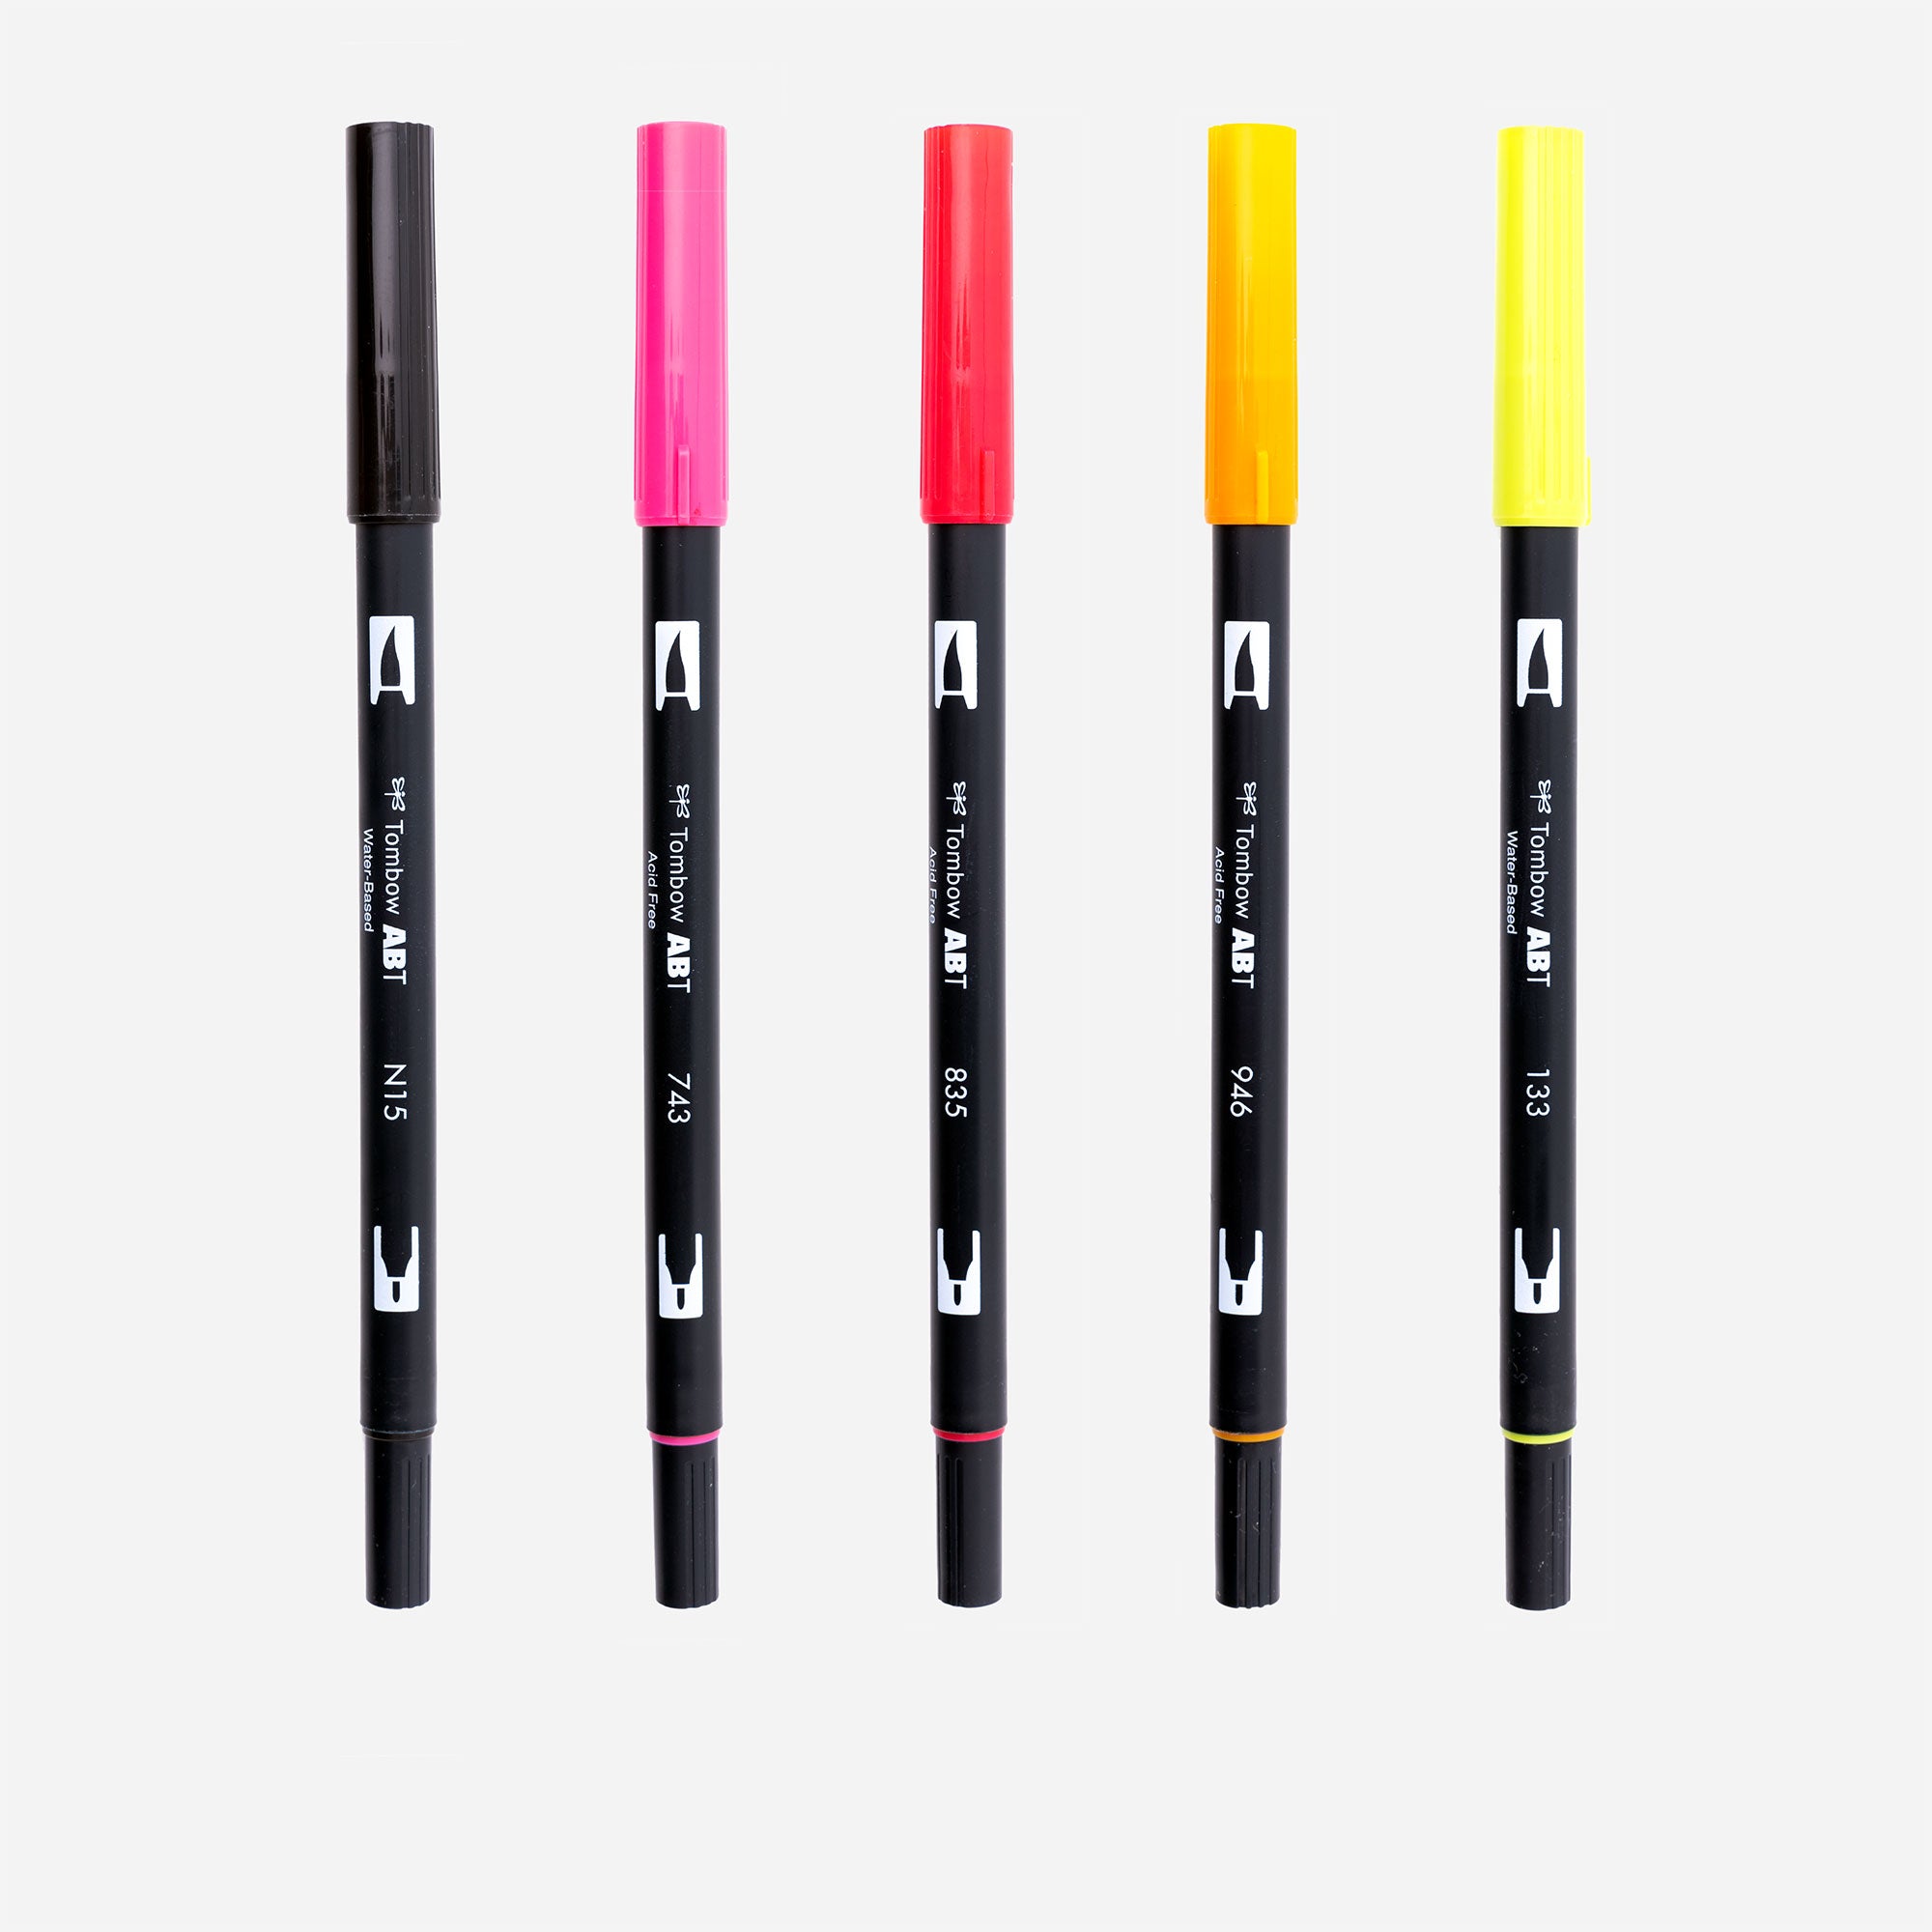 Dual-brush pen ABT